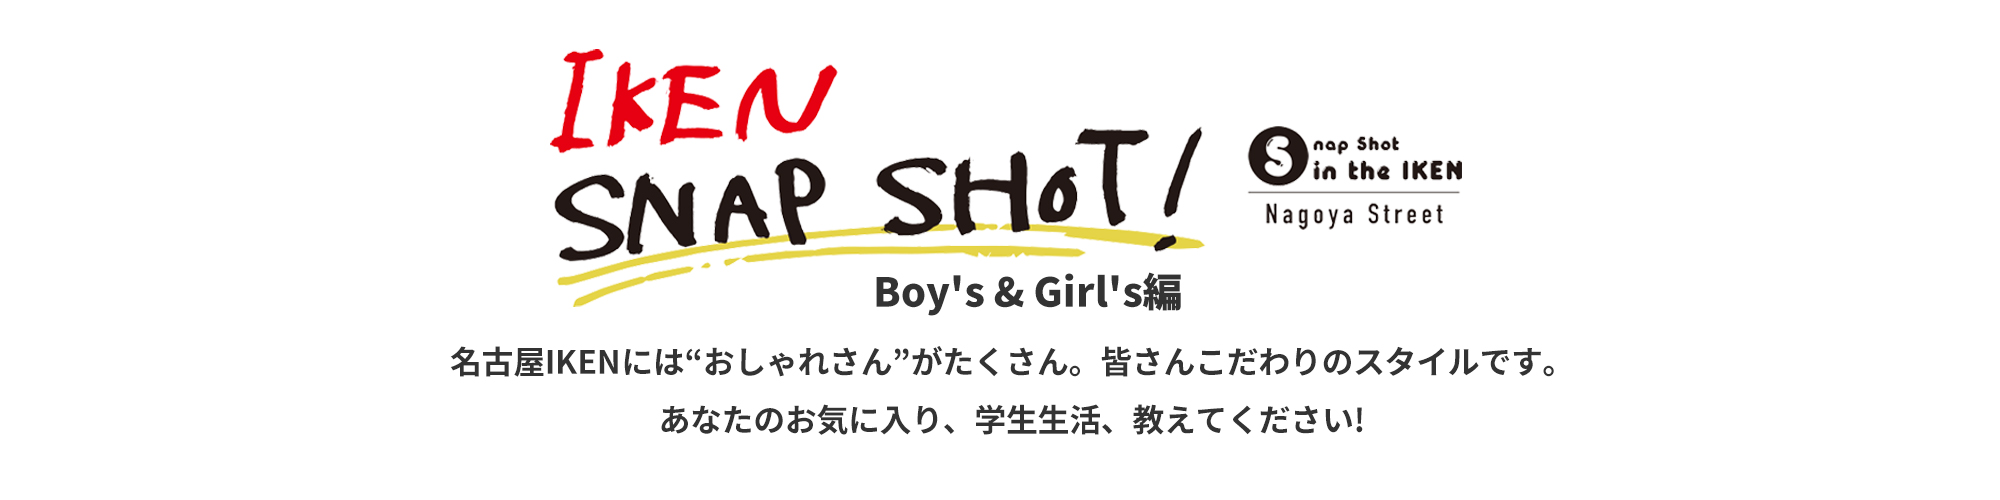 IKEN SNAP SHOT! Boy's & Girl's編 名古屋IKENには“おしゃれさん”がたくさん。皆さんこだわりのスタイルです。あなたのお気に入り、学校生活教えてください!